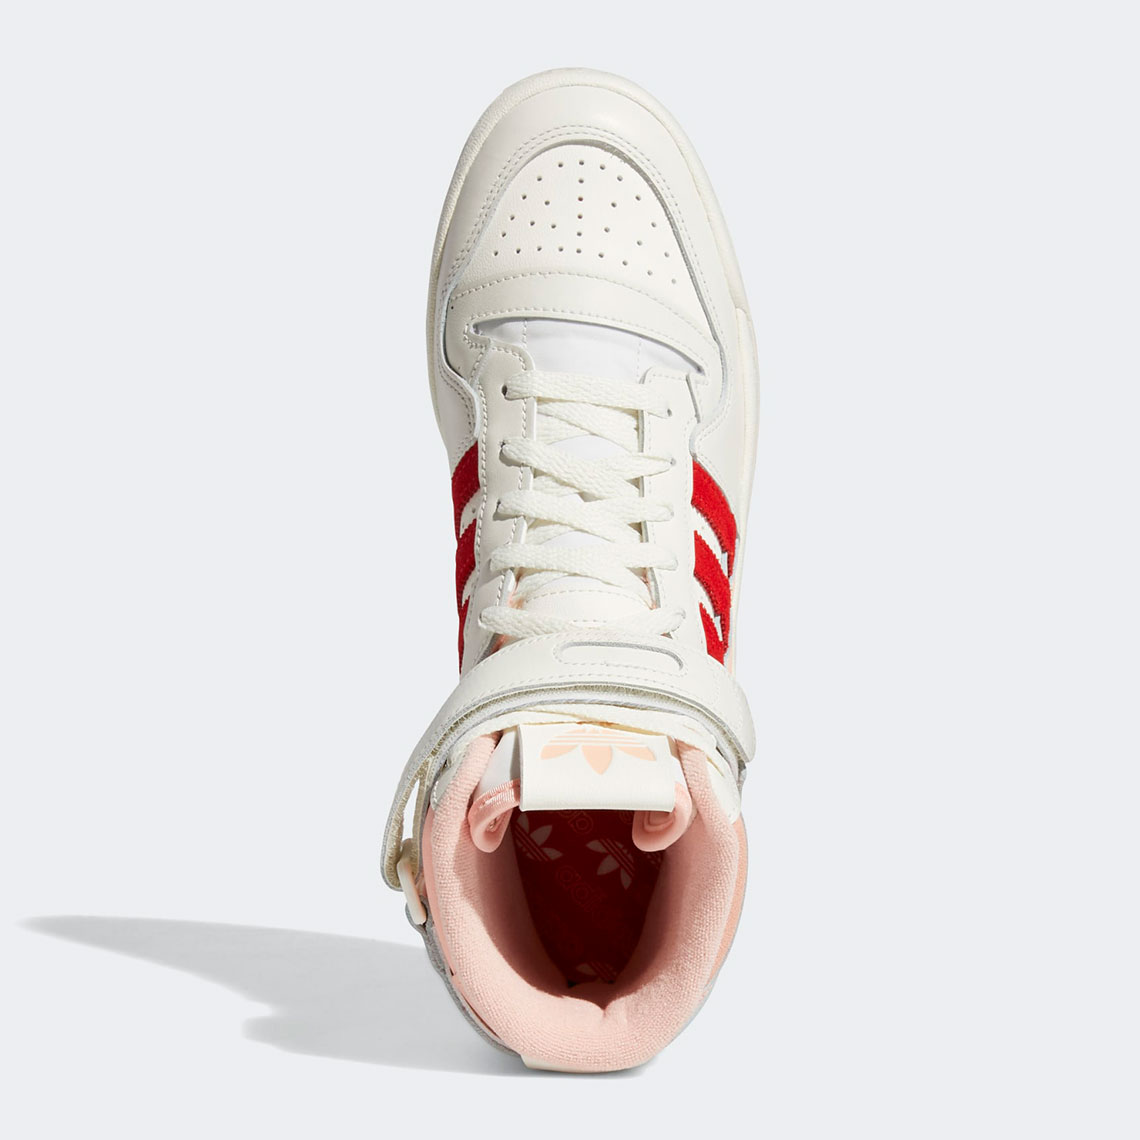 adidas-forum-84-hi-off-white-pink-glow-vivid-red-H01670-2.jpg